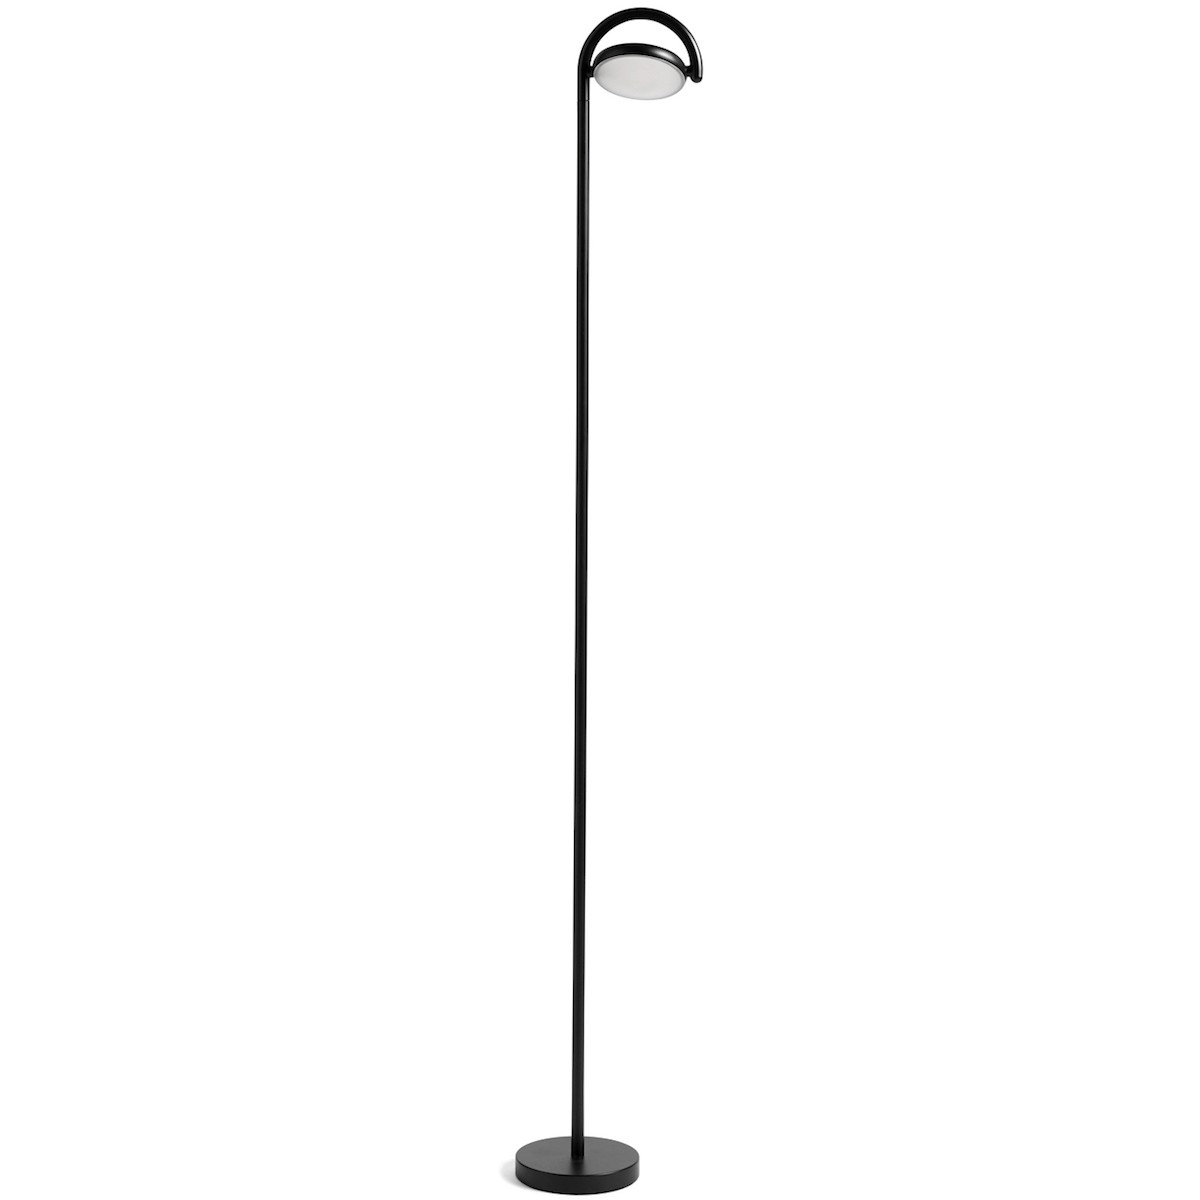 soft black - Marselis floor lamp